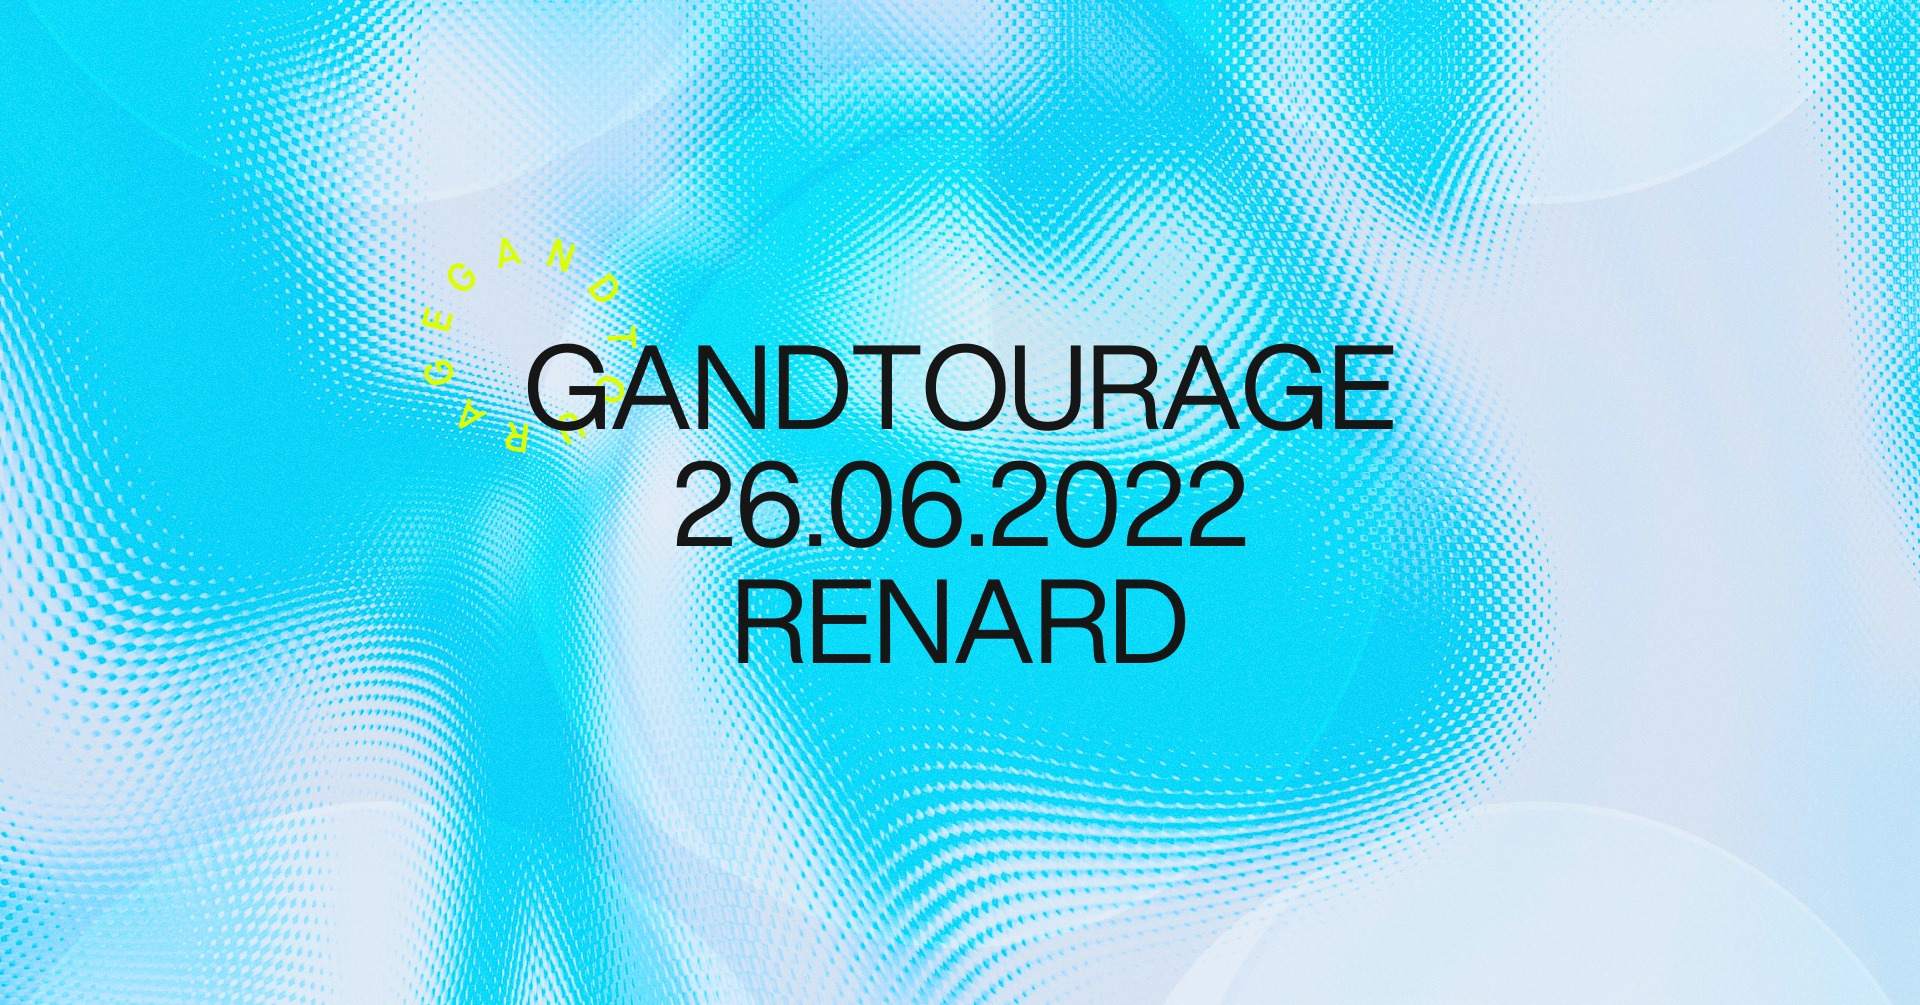 Gandtourage - フライヤー表